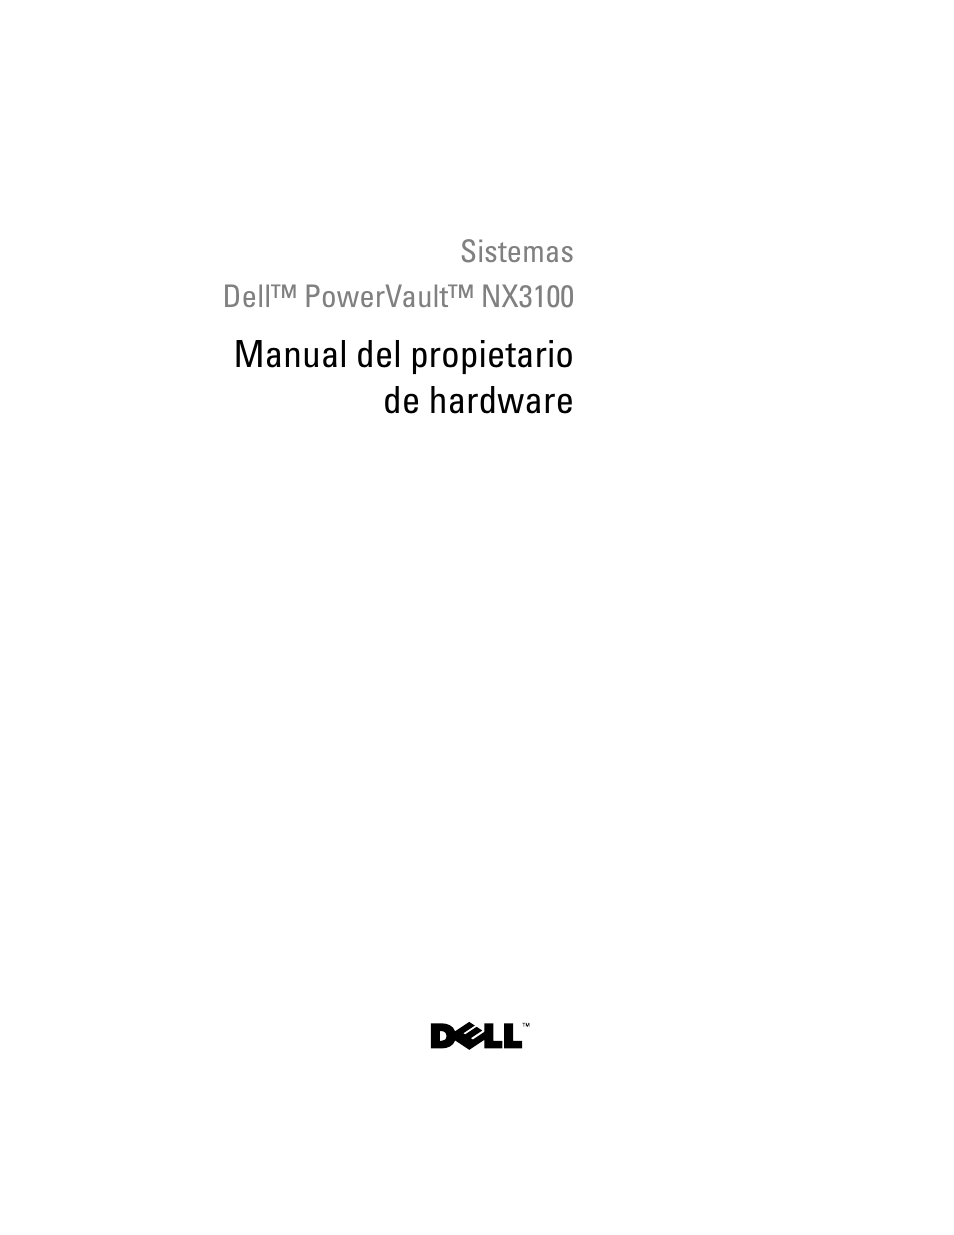 Dell PowerVault NX3100 Manual del usuario | Páginas: 182